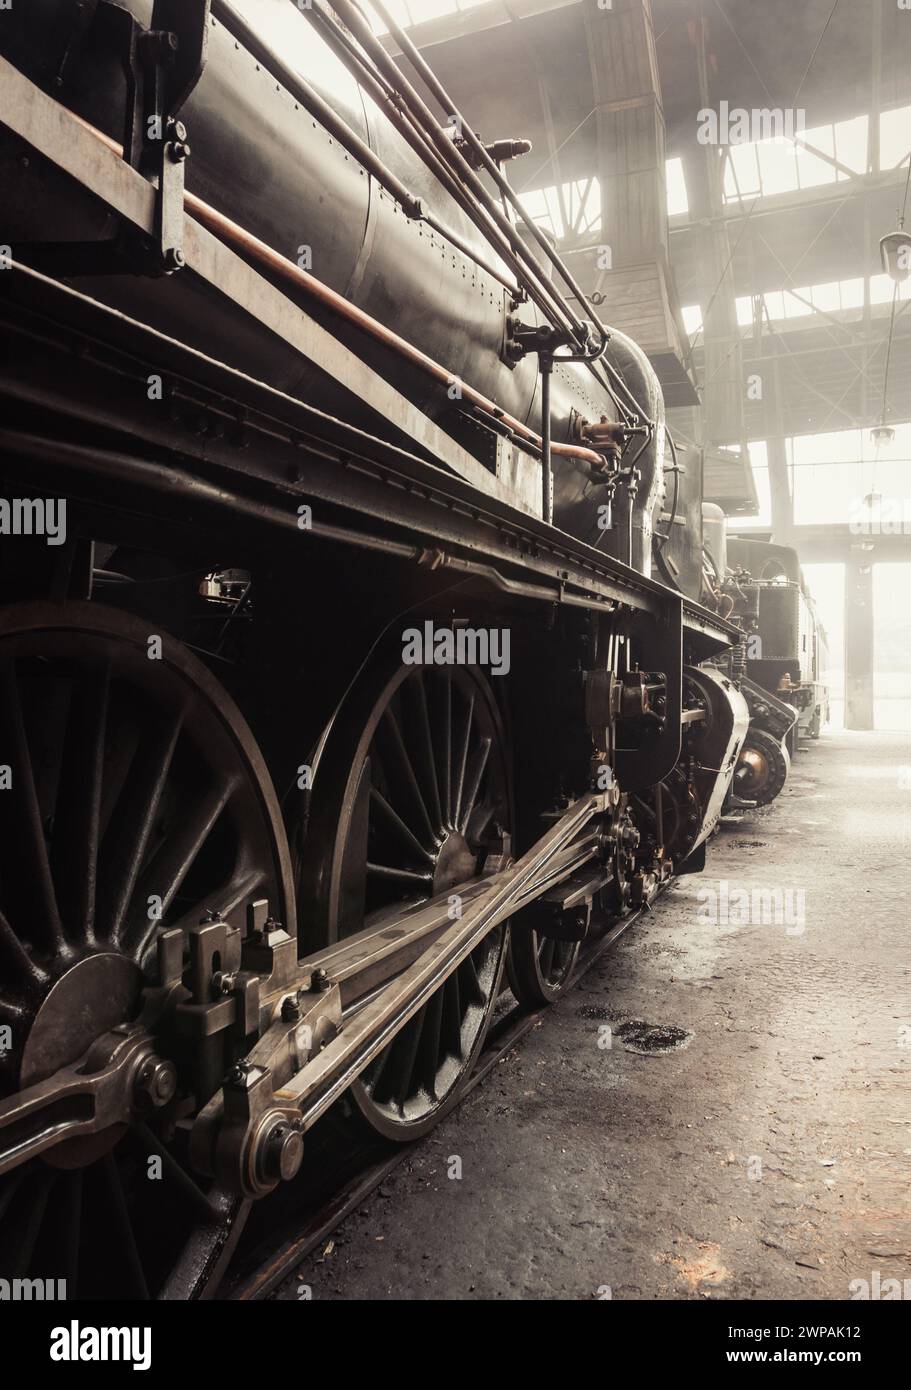 Steam Era - ancienne locomotive à vapeur dans le hangar de train. Locomotive à vapeur en dépôt. Image dans des tons chauds (presque sépia). Espace intérieur du dépôt rempli de fumée. Banque D'Images